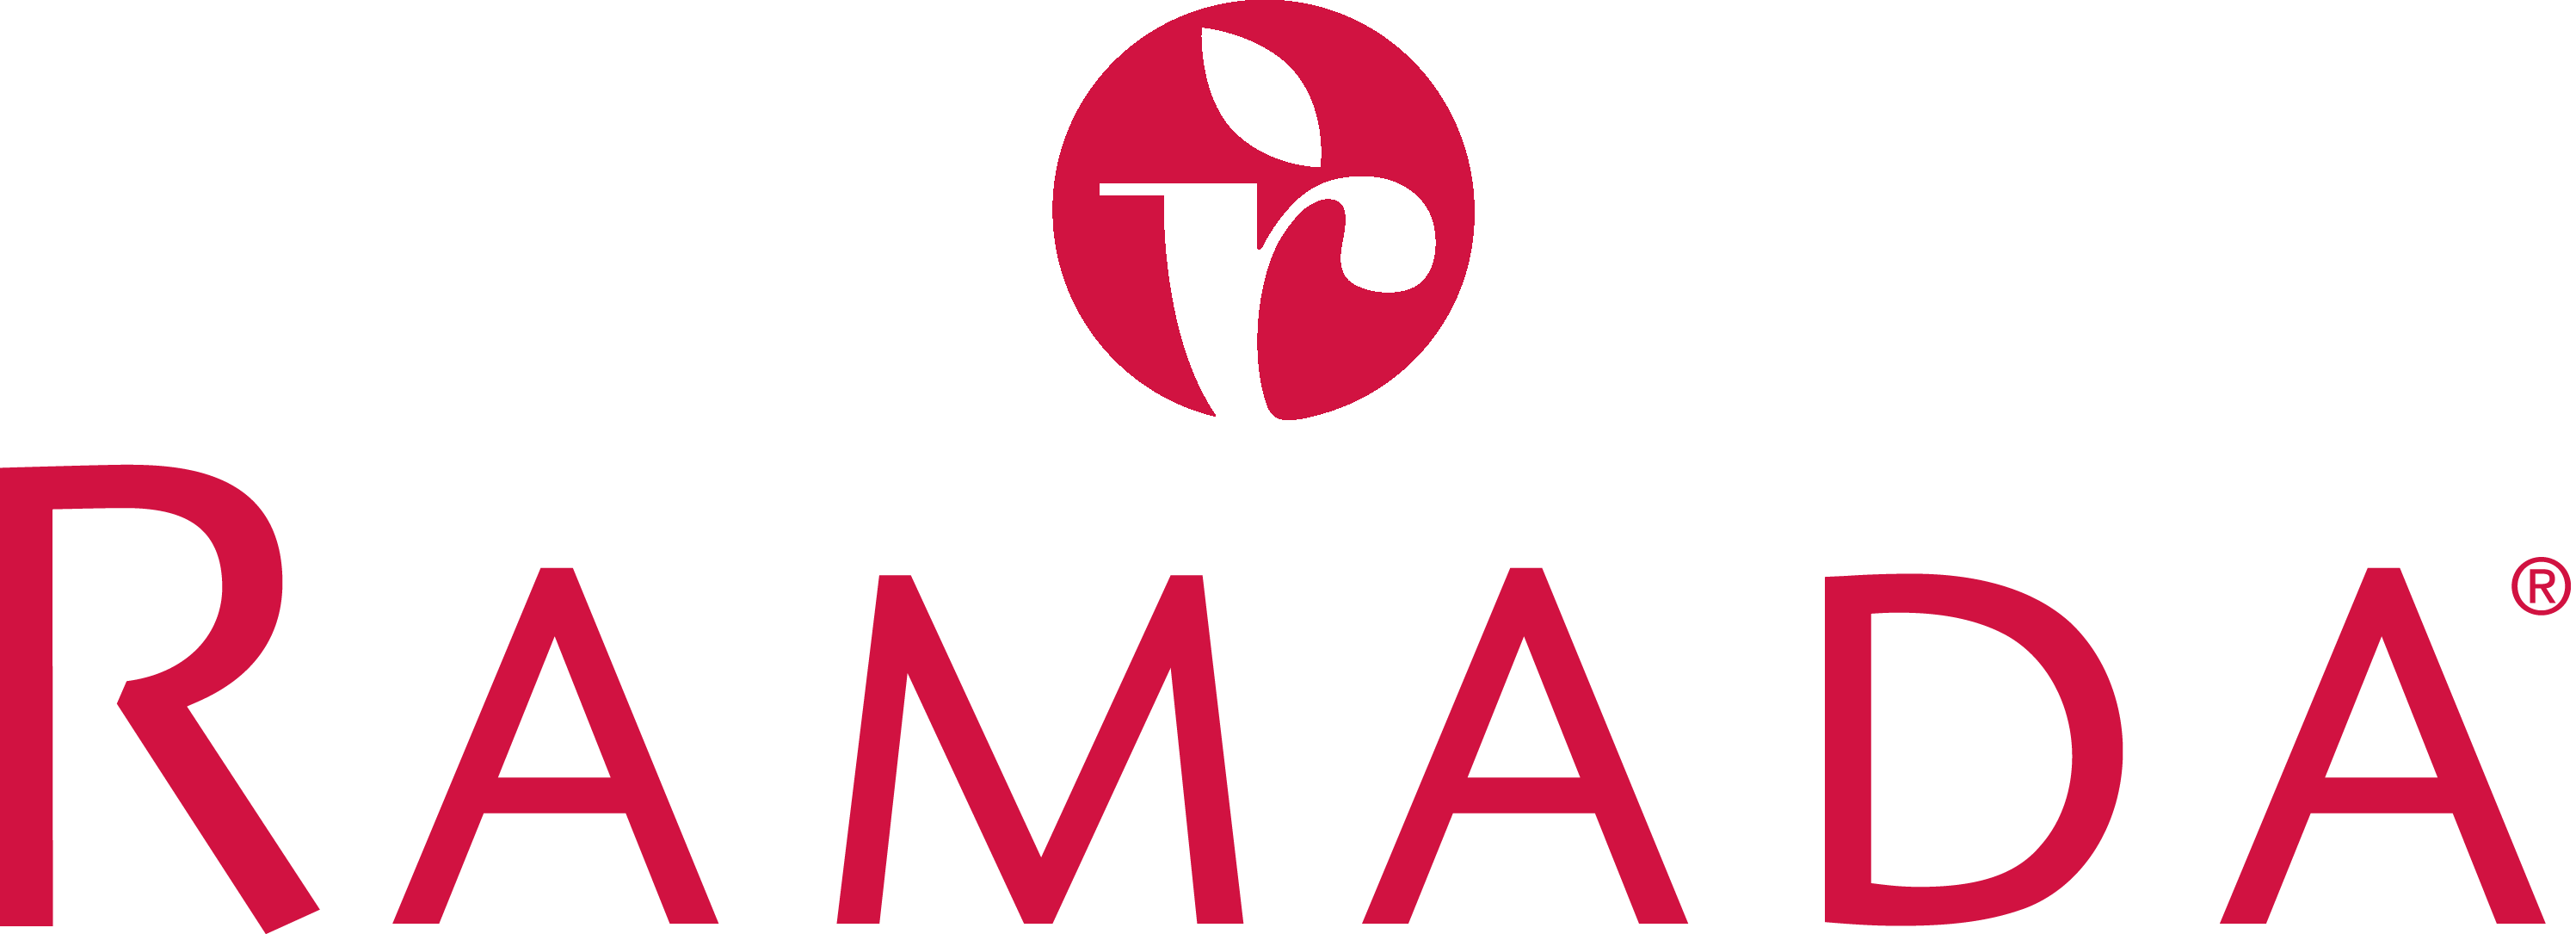 Ramada Logos